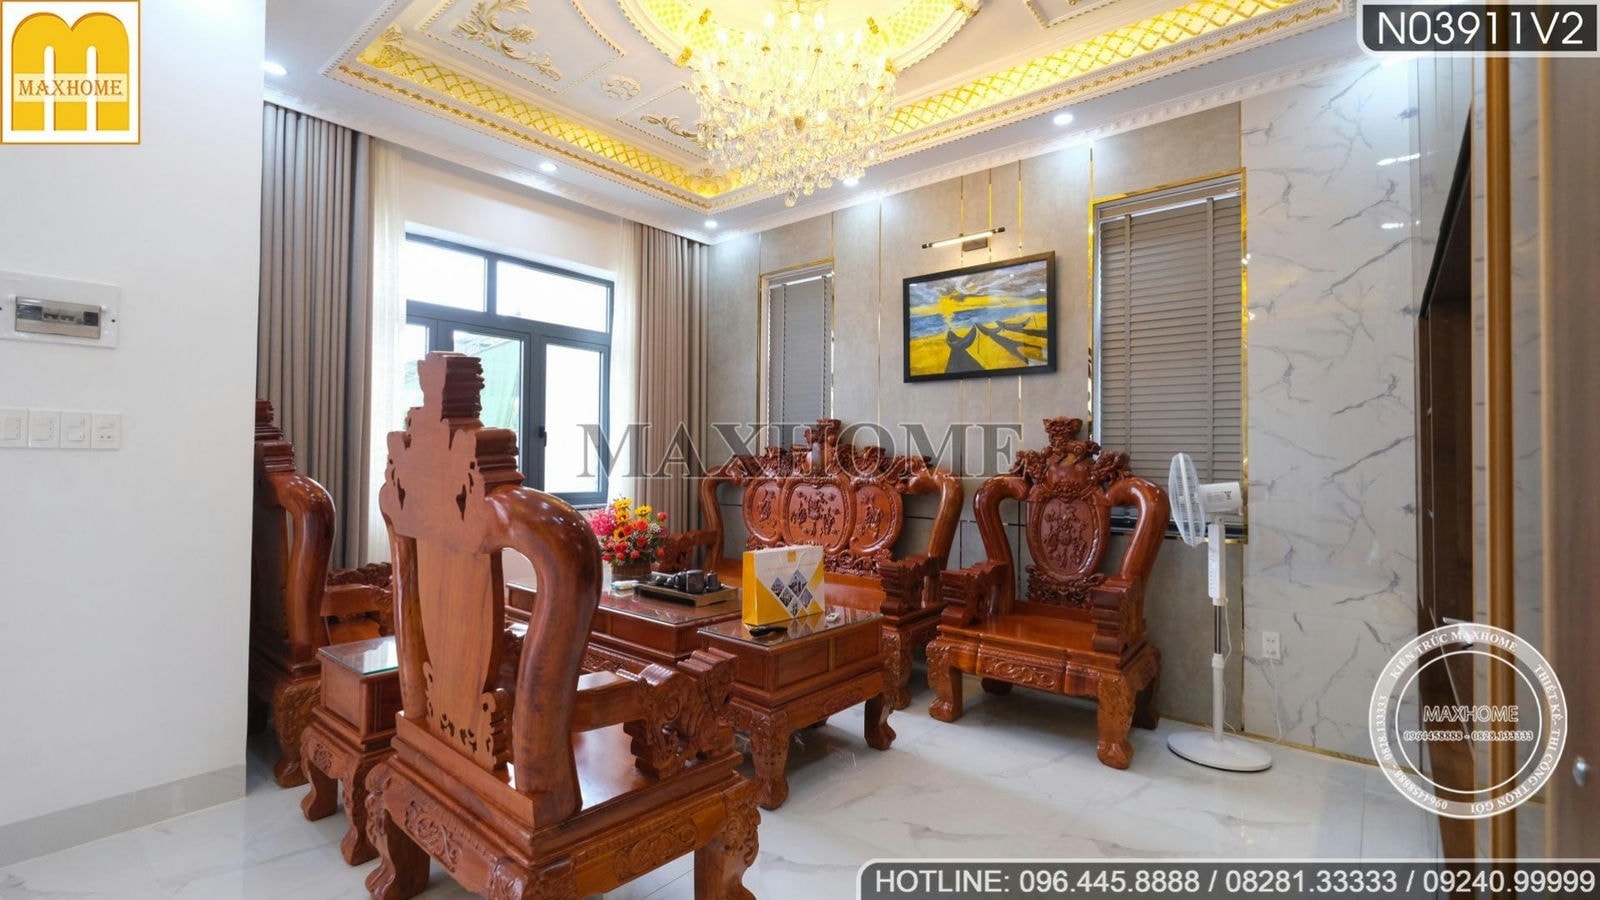 Tham quan thực tế nội thất cực đẹp từ gỗ tại Bình Thuận | MH01452